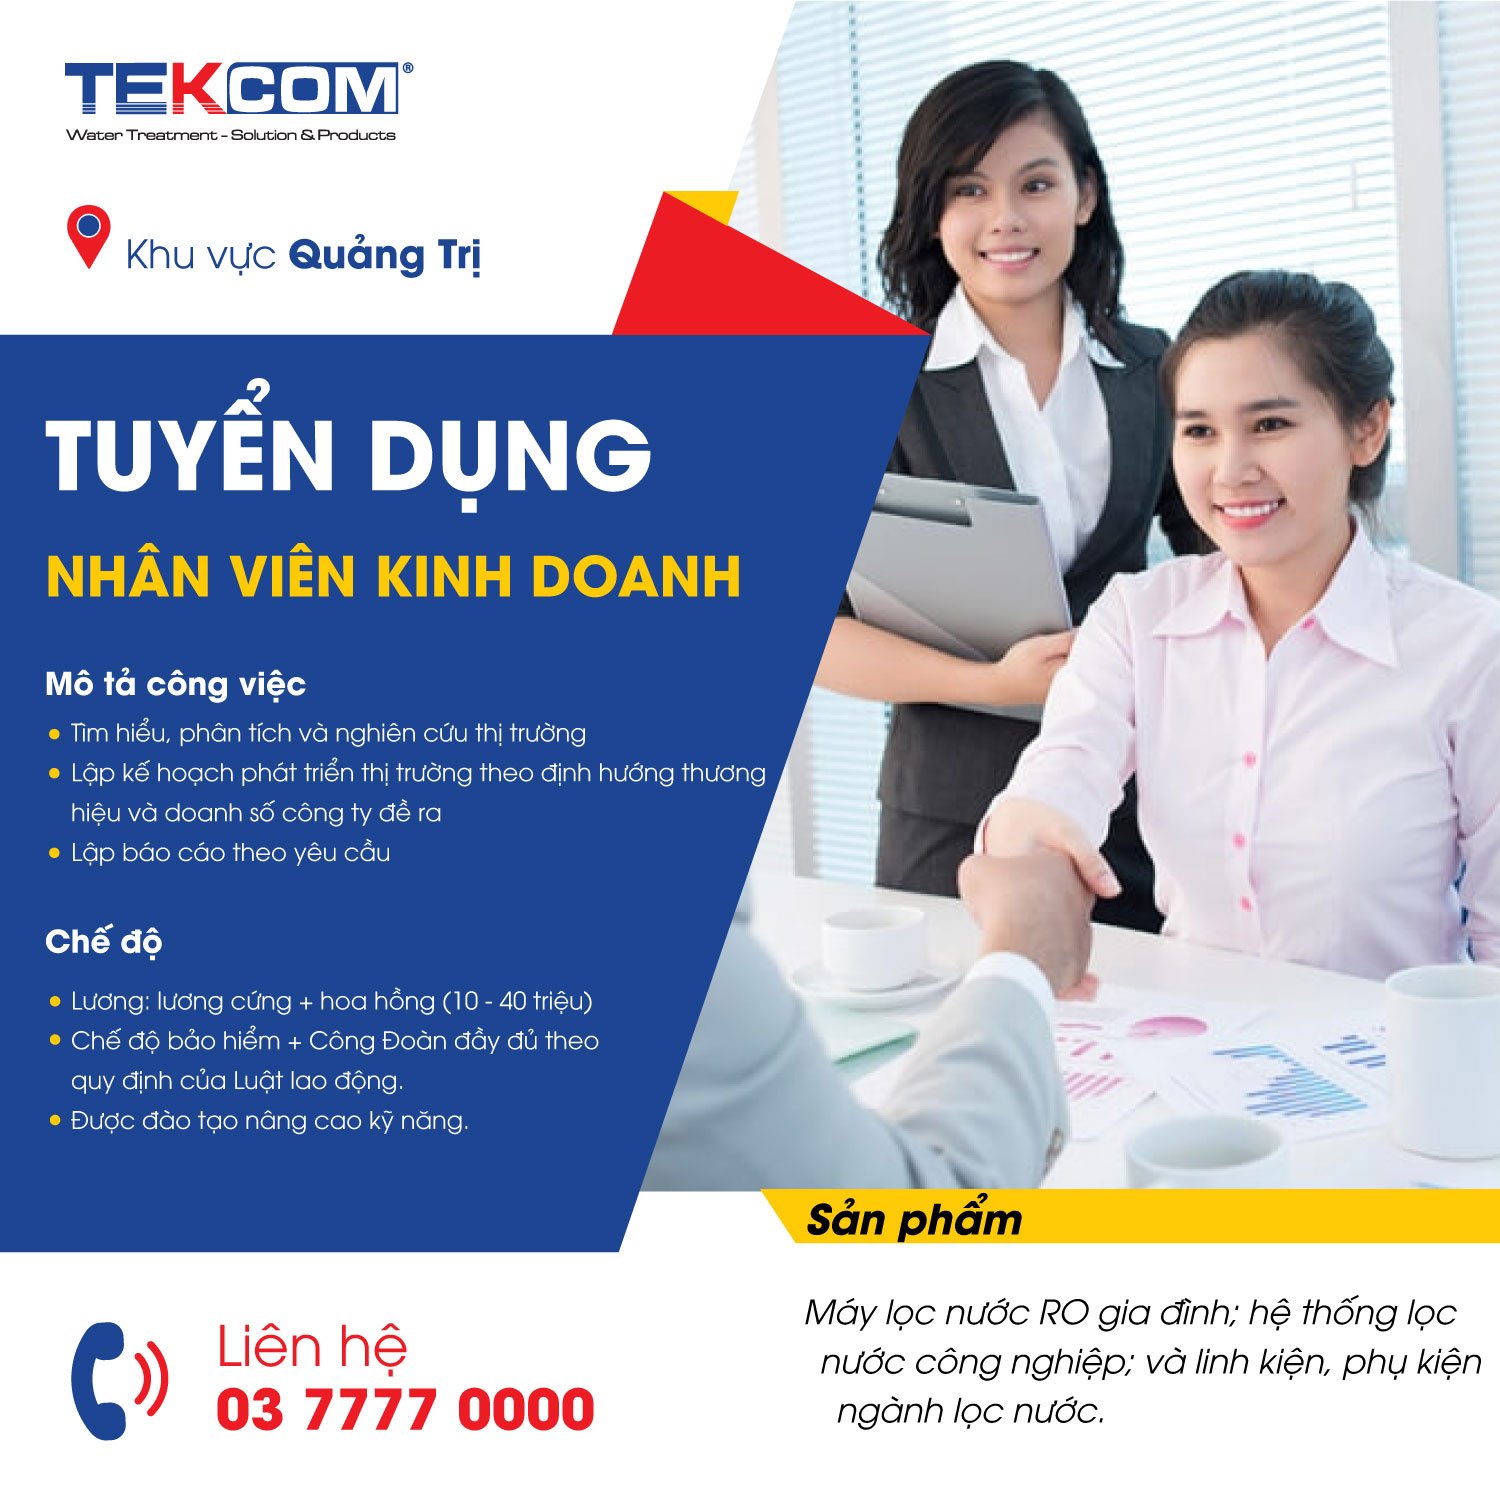 Tekcom tuyển dụng nhân viên kinh doanh khu vực Quảng Trị